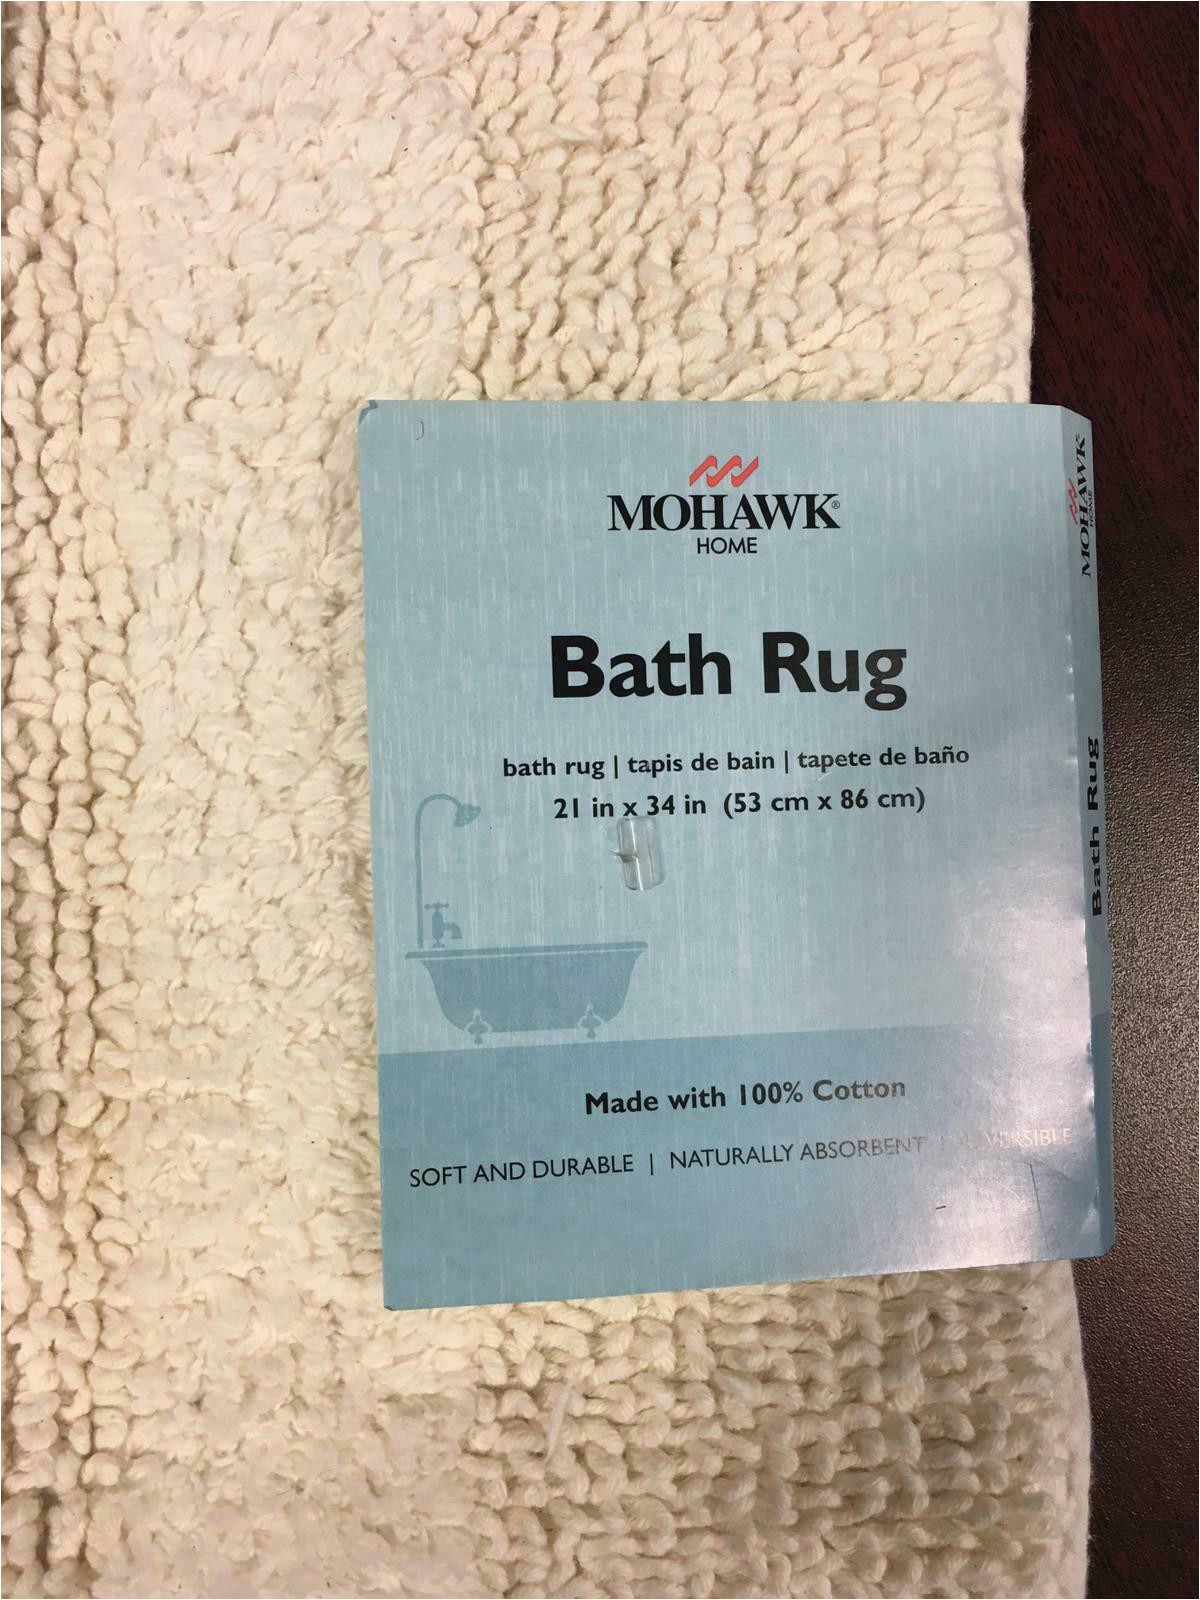 Reversible Bath Rugs Sale Mohawk Cotton Reversible Bath Rug Size 21"x34"